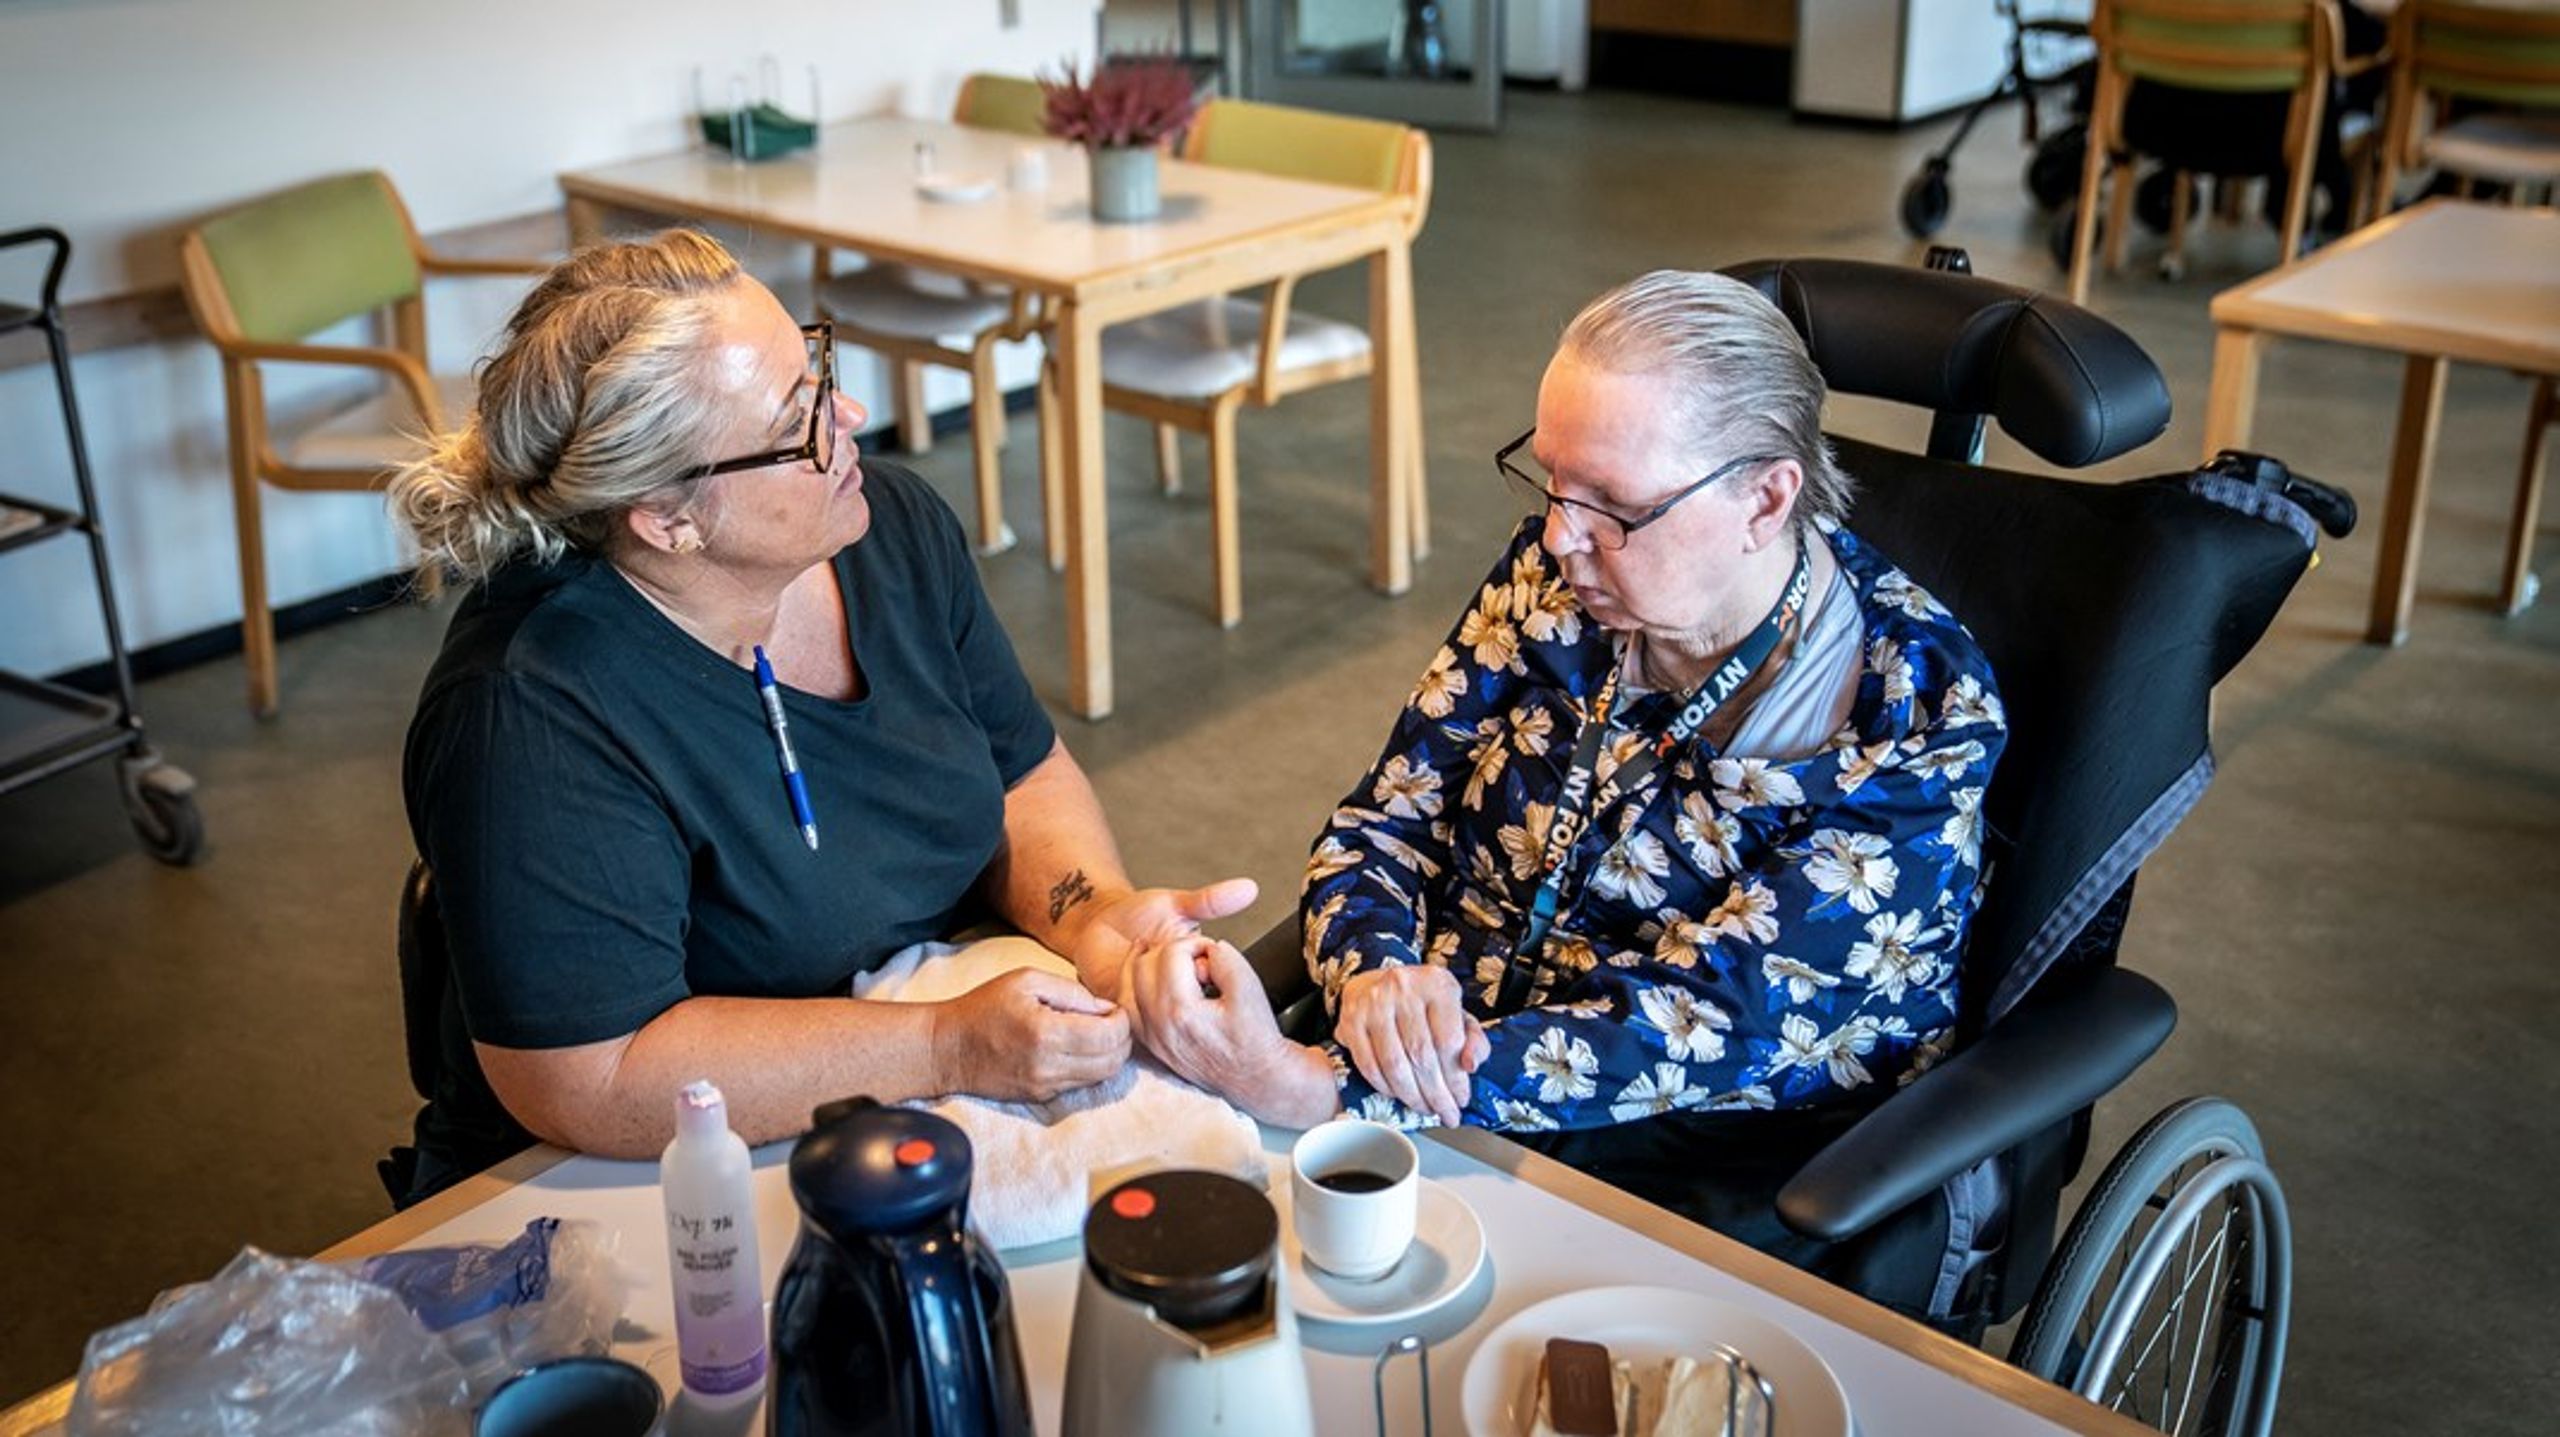 Frontpersonale i ældreplejen kan med fordel hjælpe med at opspore og støtte den oversete gruppe af sorgramte ældre, skriver Preben Engelbrekt.